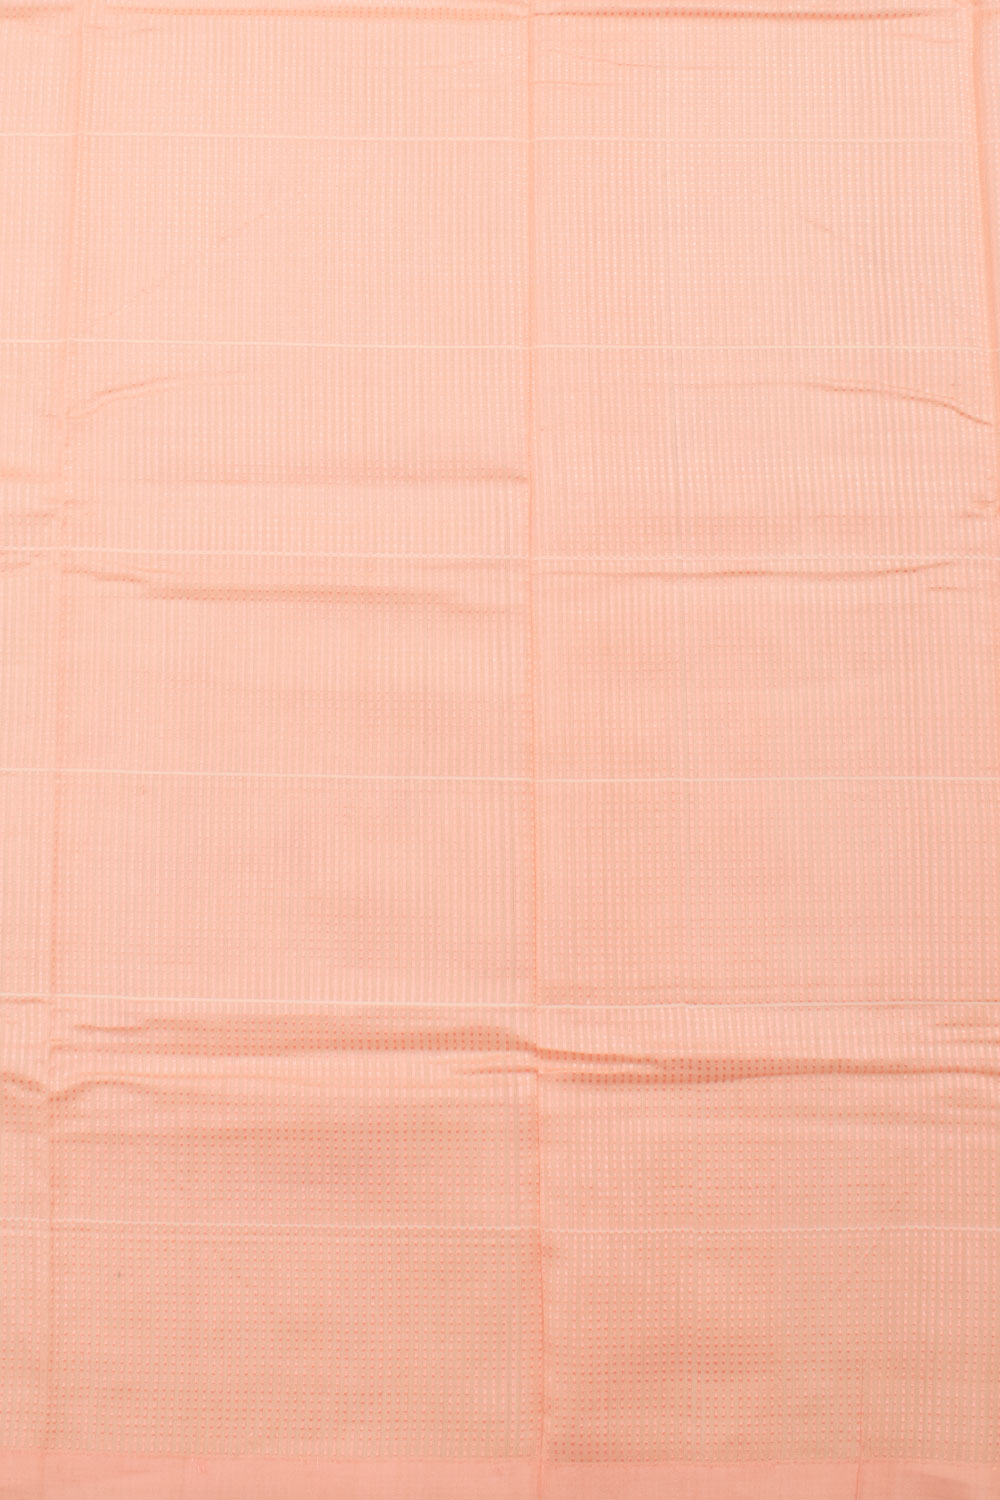 Pastel Peach Handloom Chanderi Silk Cotton Saree 10059681